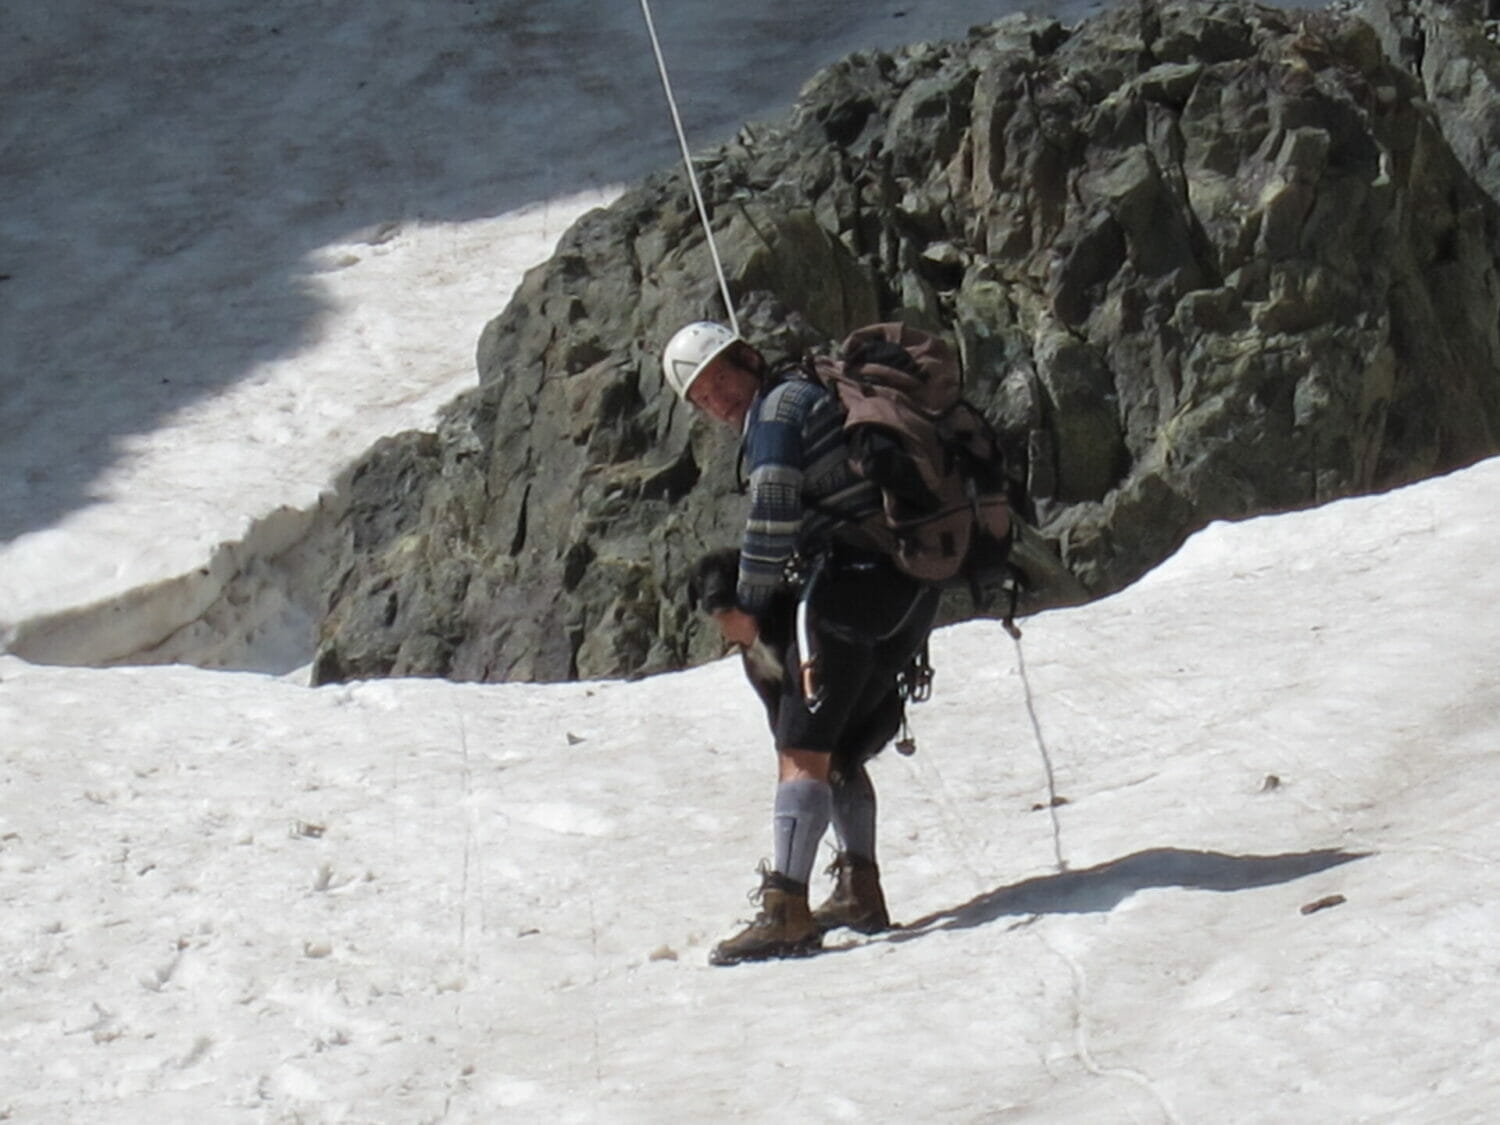 Mann mit Kletterausrüstung.